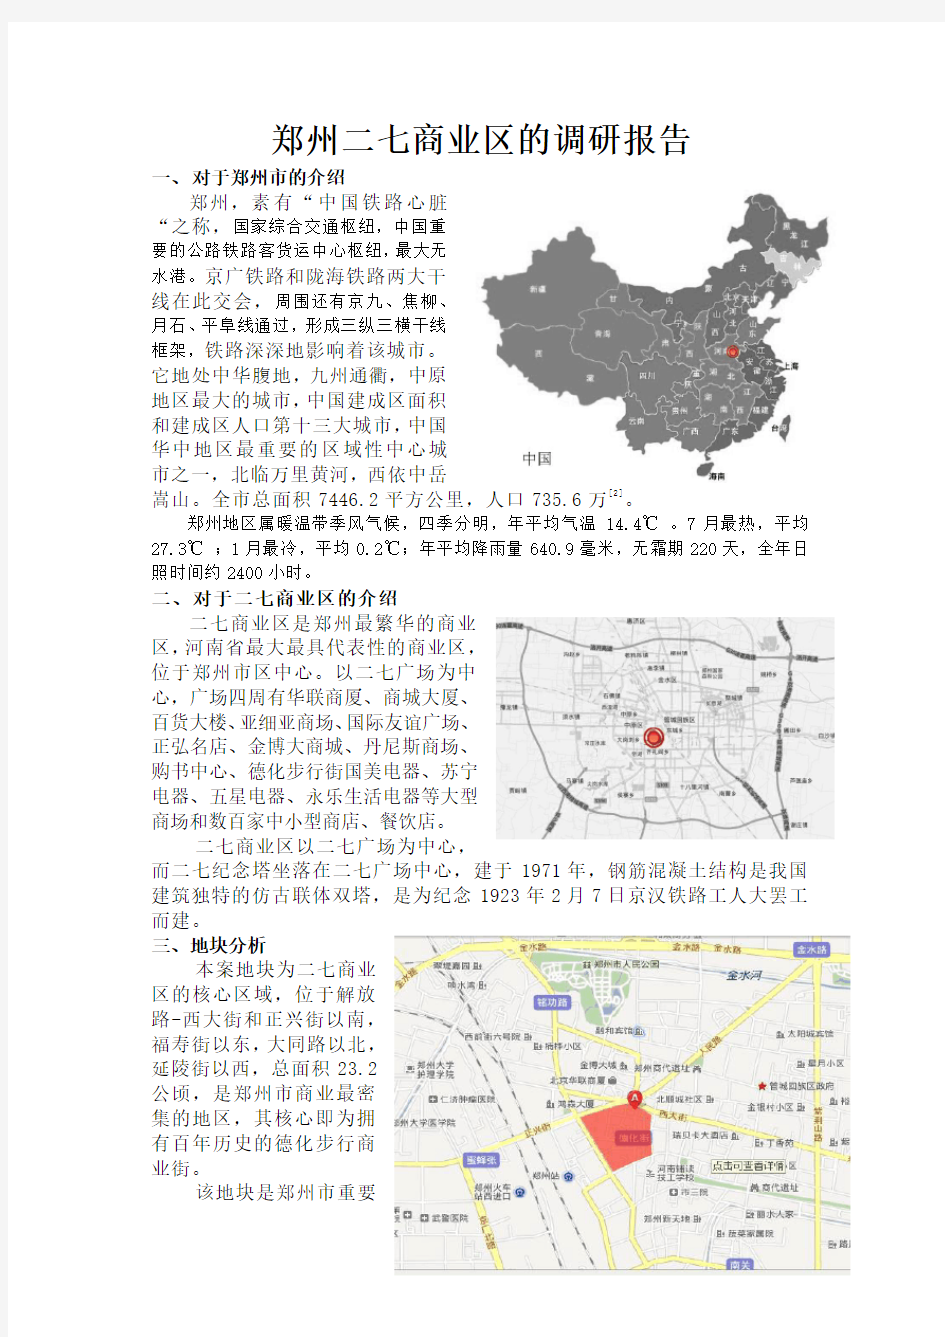 郑州二七商业区的调研报告